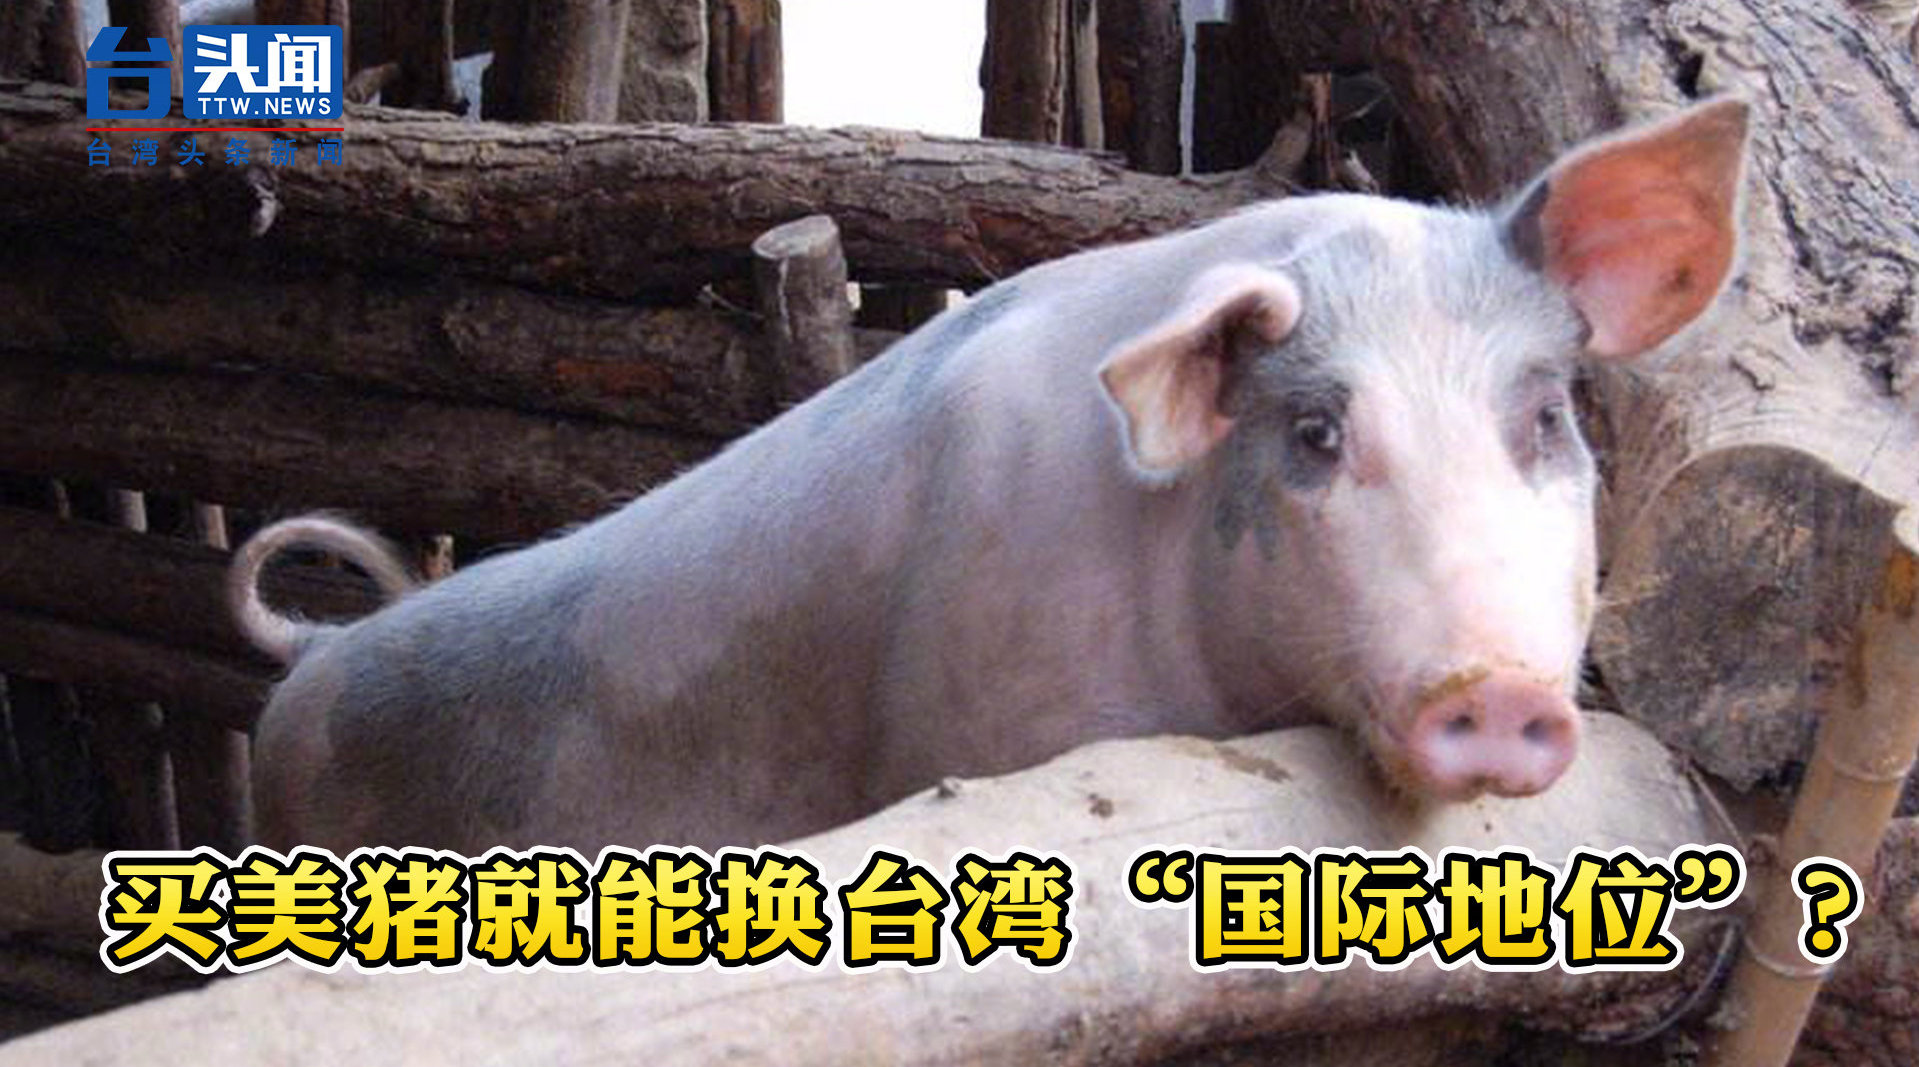 独不择路民进党竟称开放美猪进口可换台湾国际地位